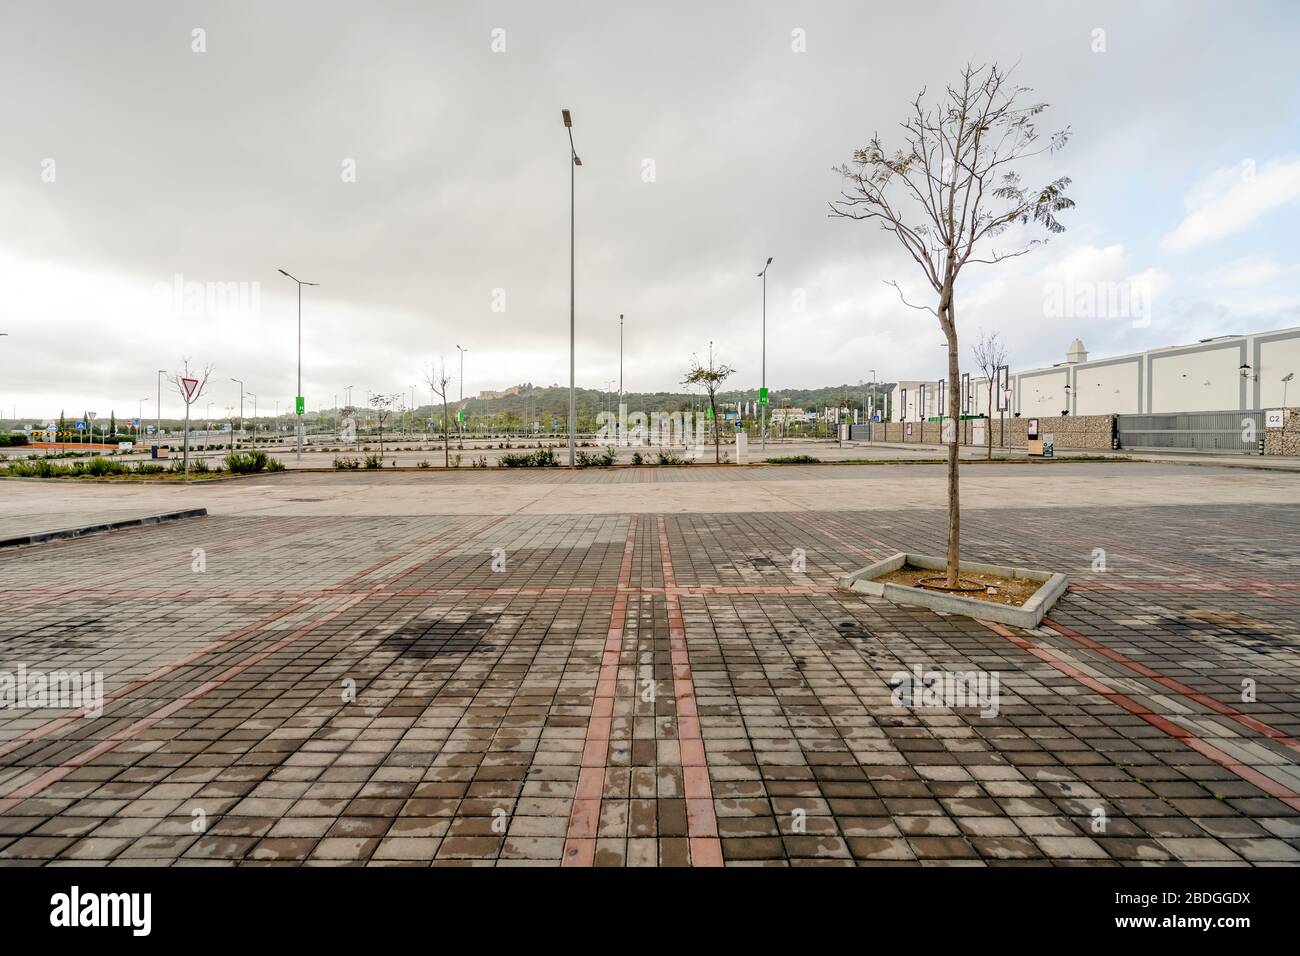 Faro, Portugal - 7. April 2020: Leerer Parkplatz vor dem größten Einkaufszentrum der Algarve - MAR Shopping Mall, Designer Outlet und Ikea - fällig Stockfoto